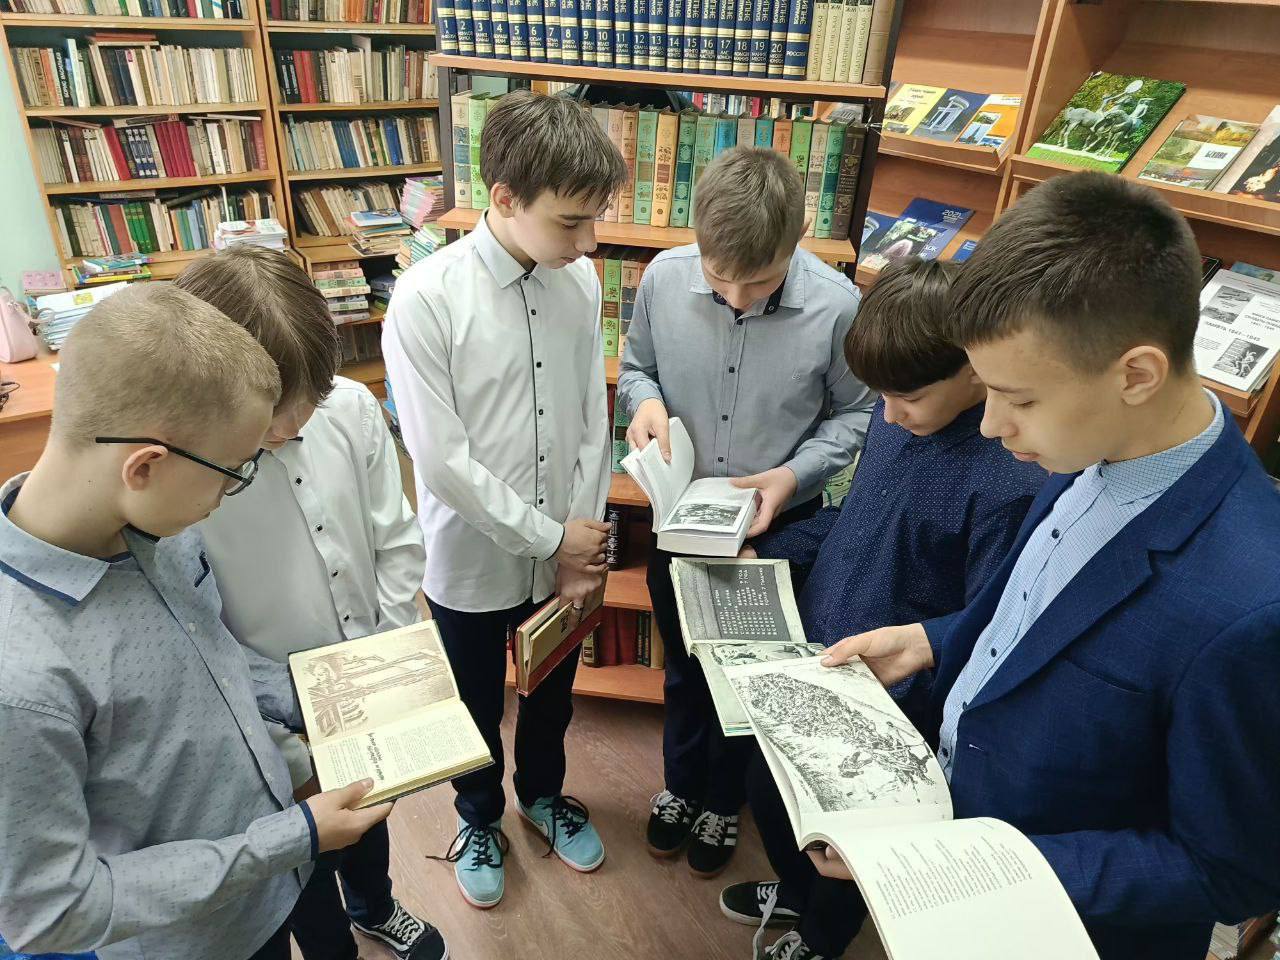 Учащиеся 7 «Б»класса посетили книжную выставку школьной библиотеки «Без срока давности...», посвящённую Дню памяти жертв геноцида.